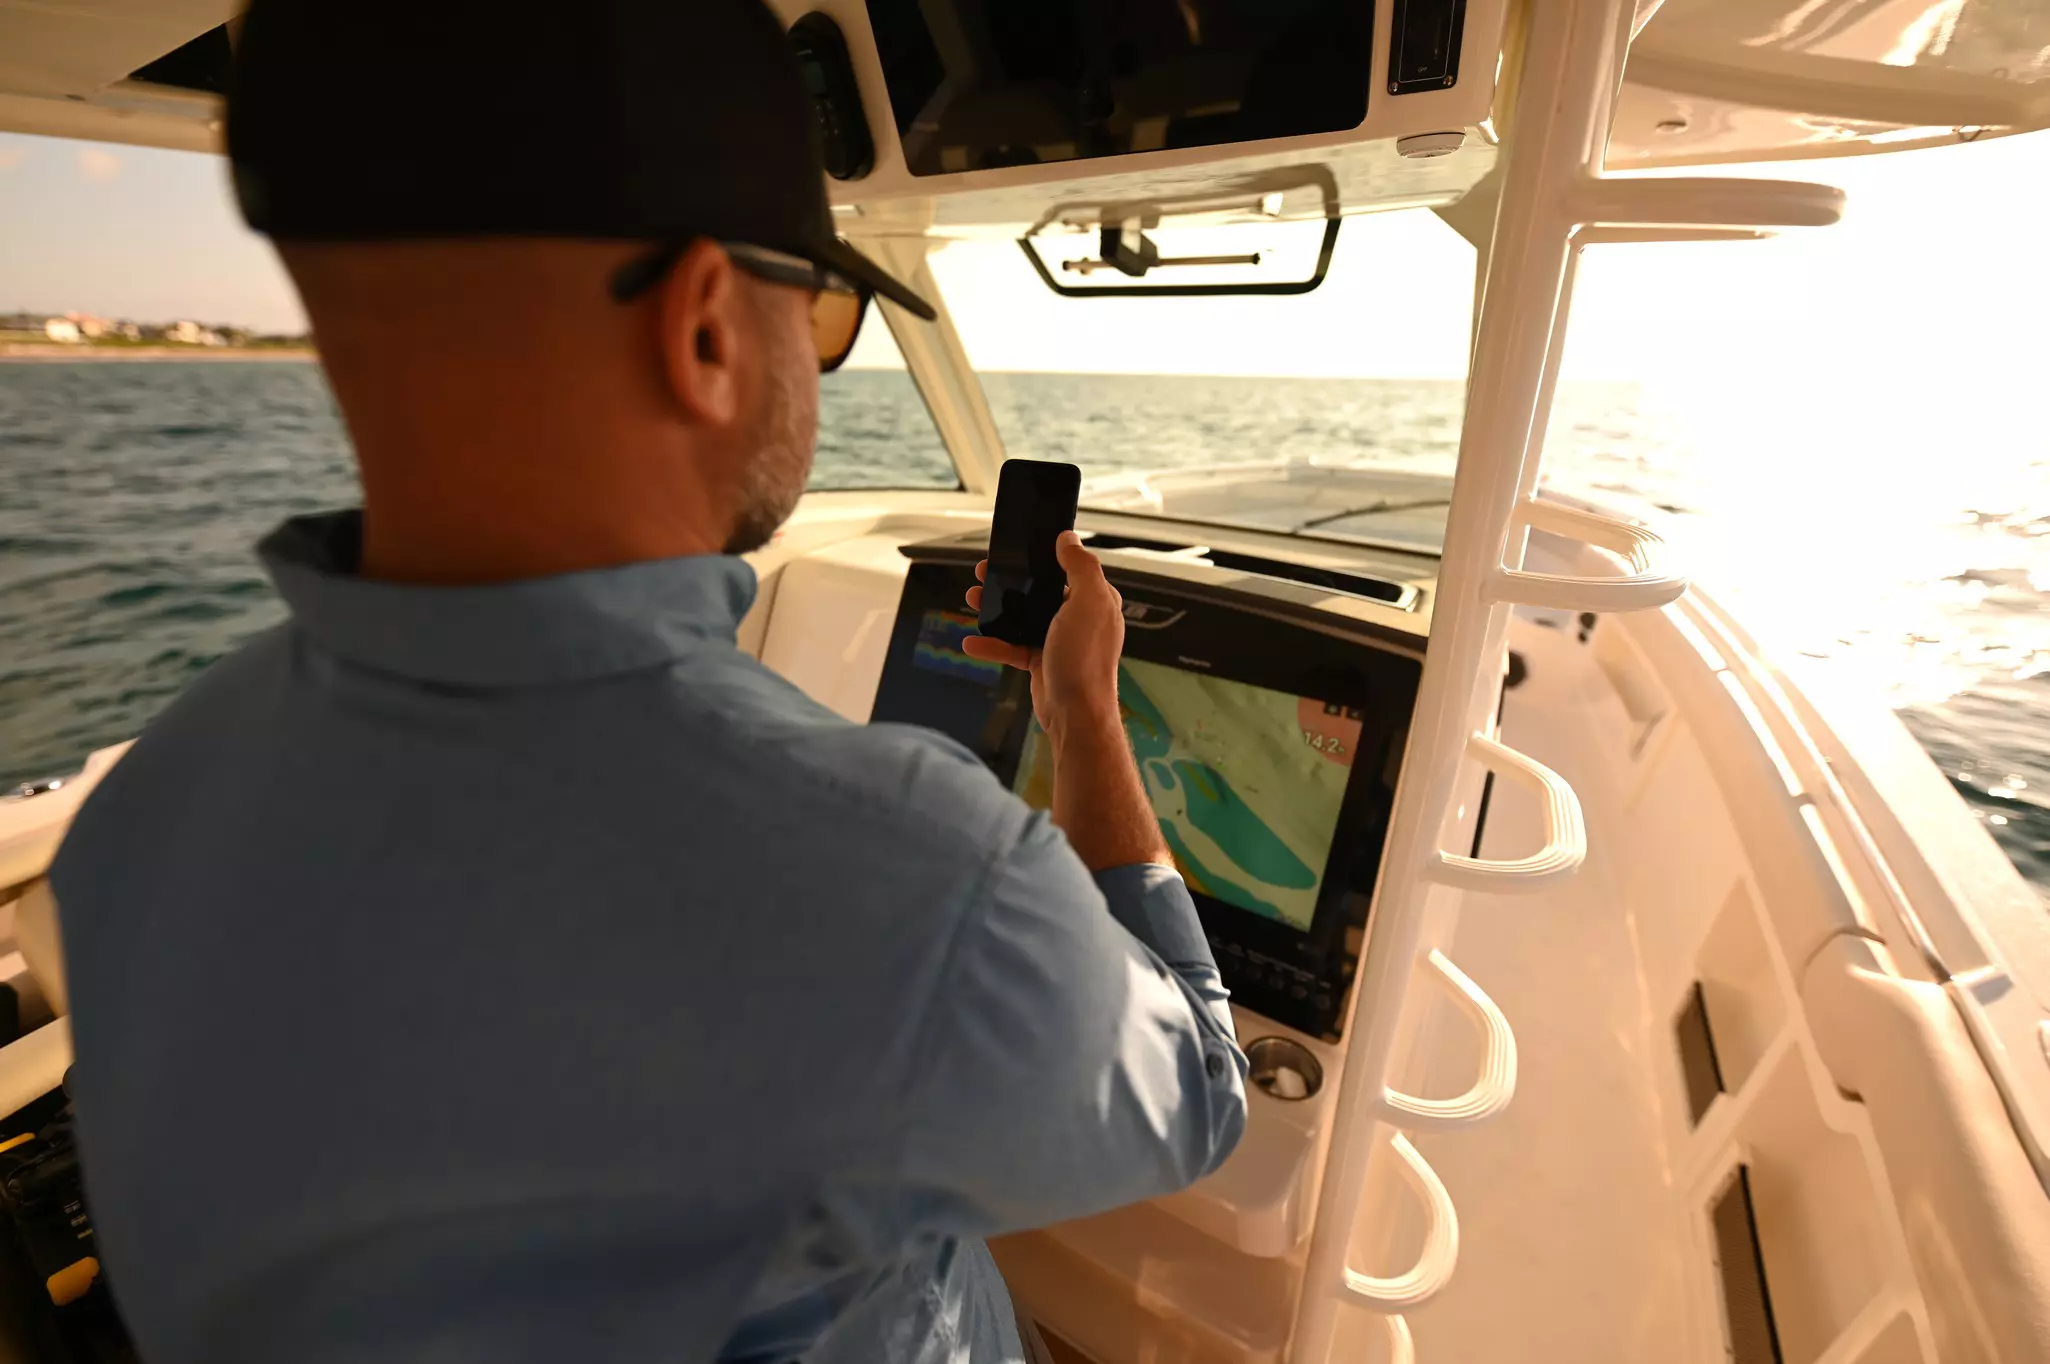 Kapitän am Steuerstand eines Bootes, der ein Mobiltelefon benutzt